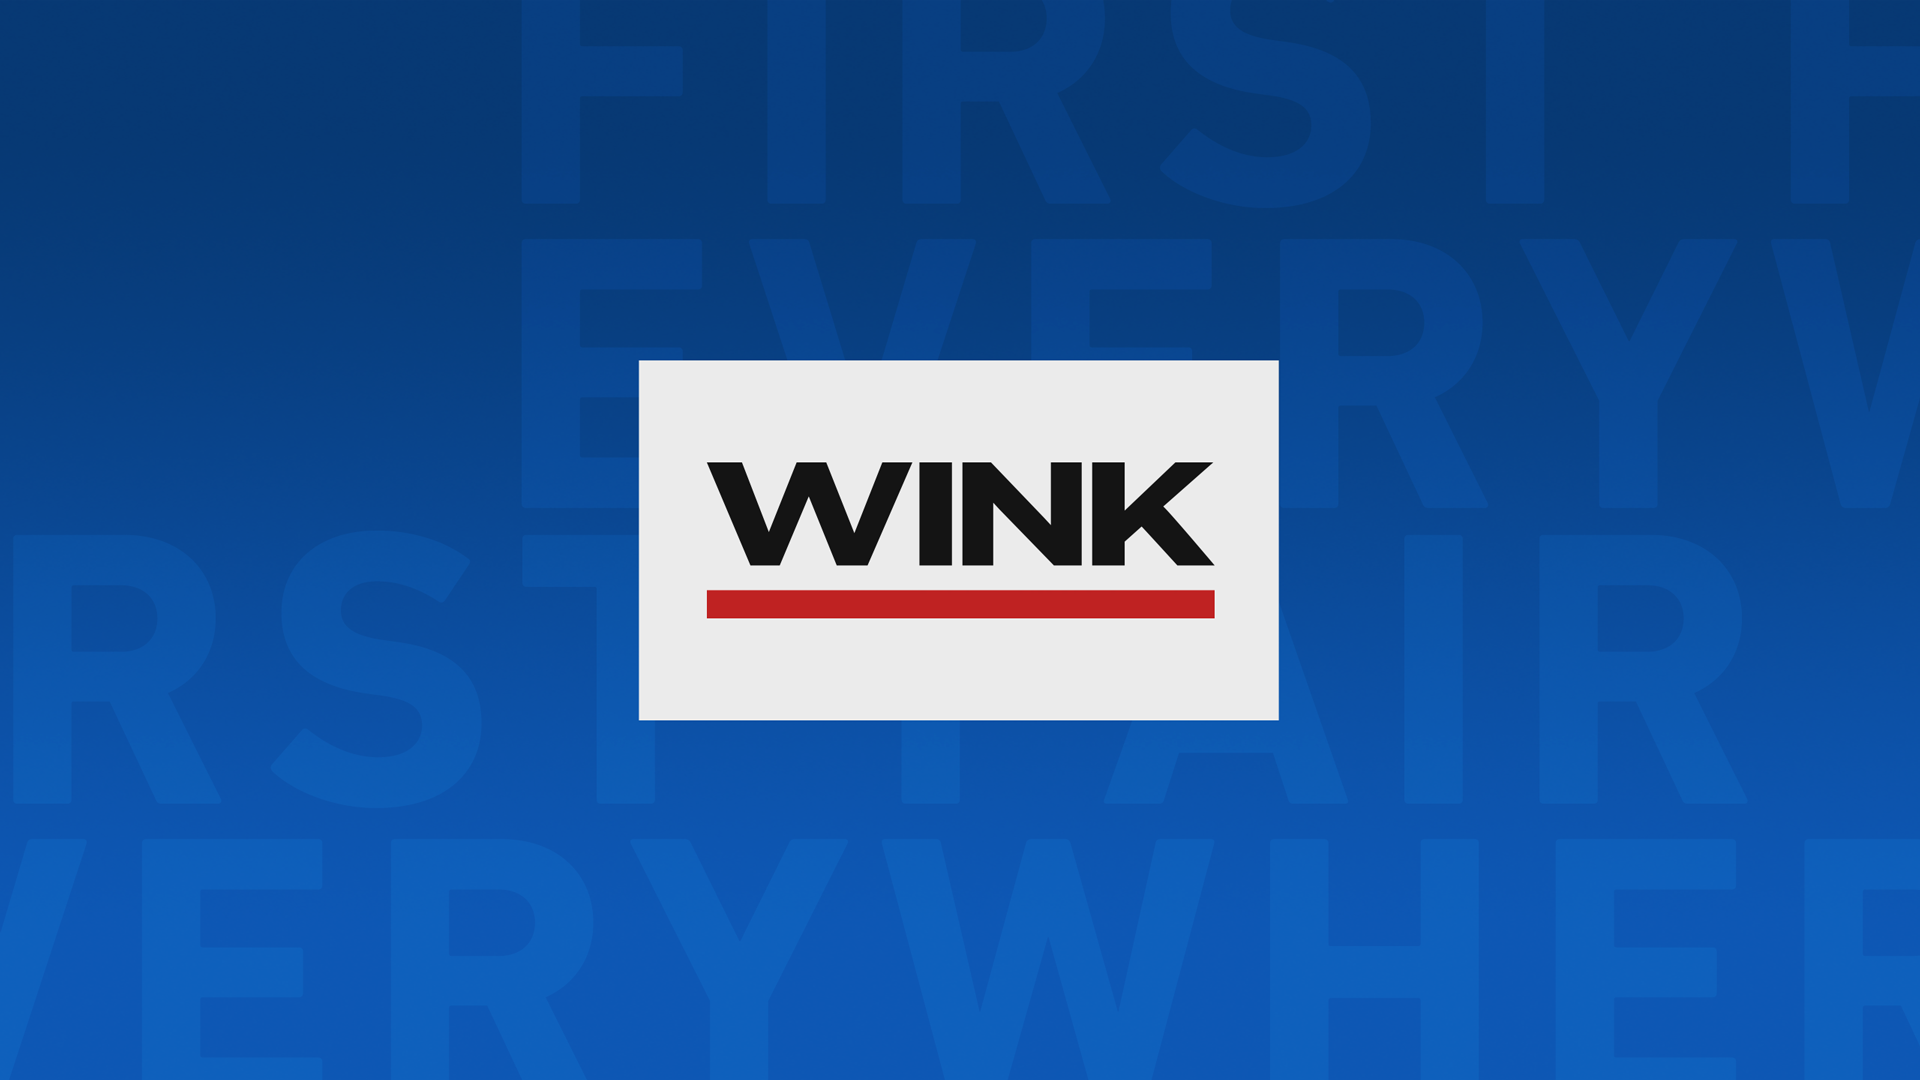 WINK News at 6:30